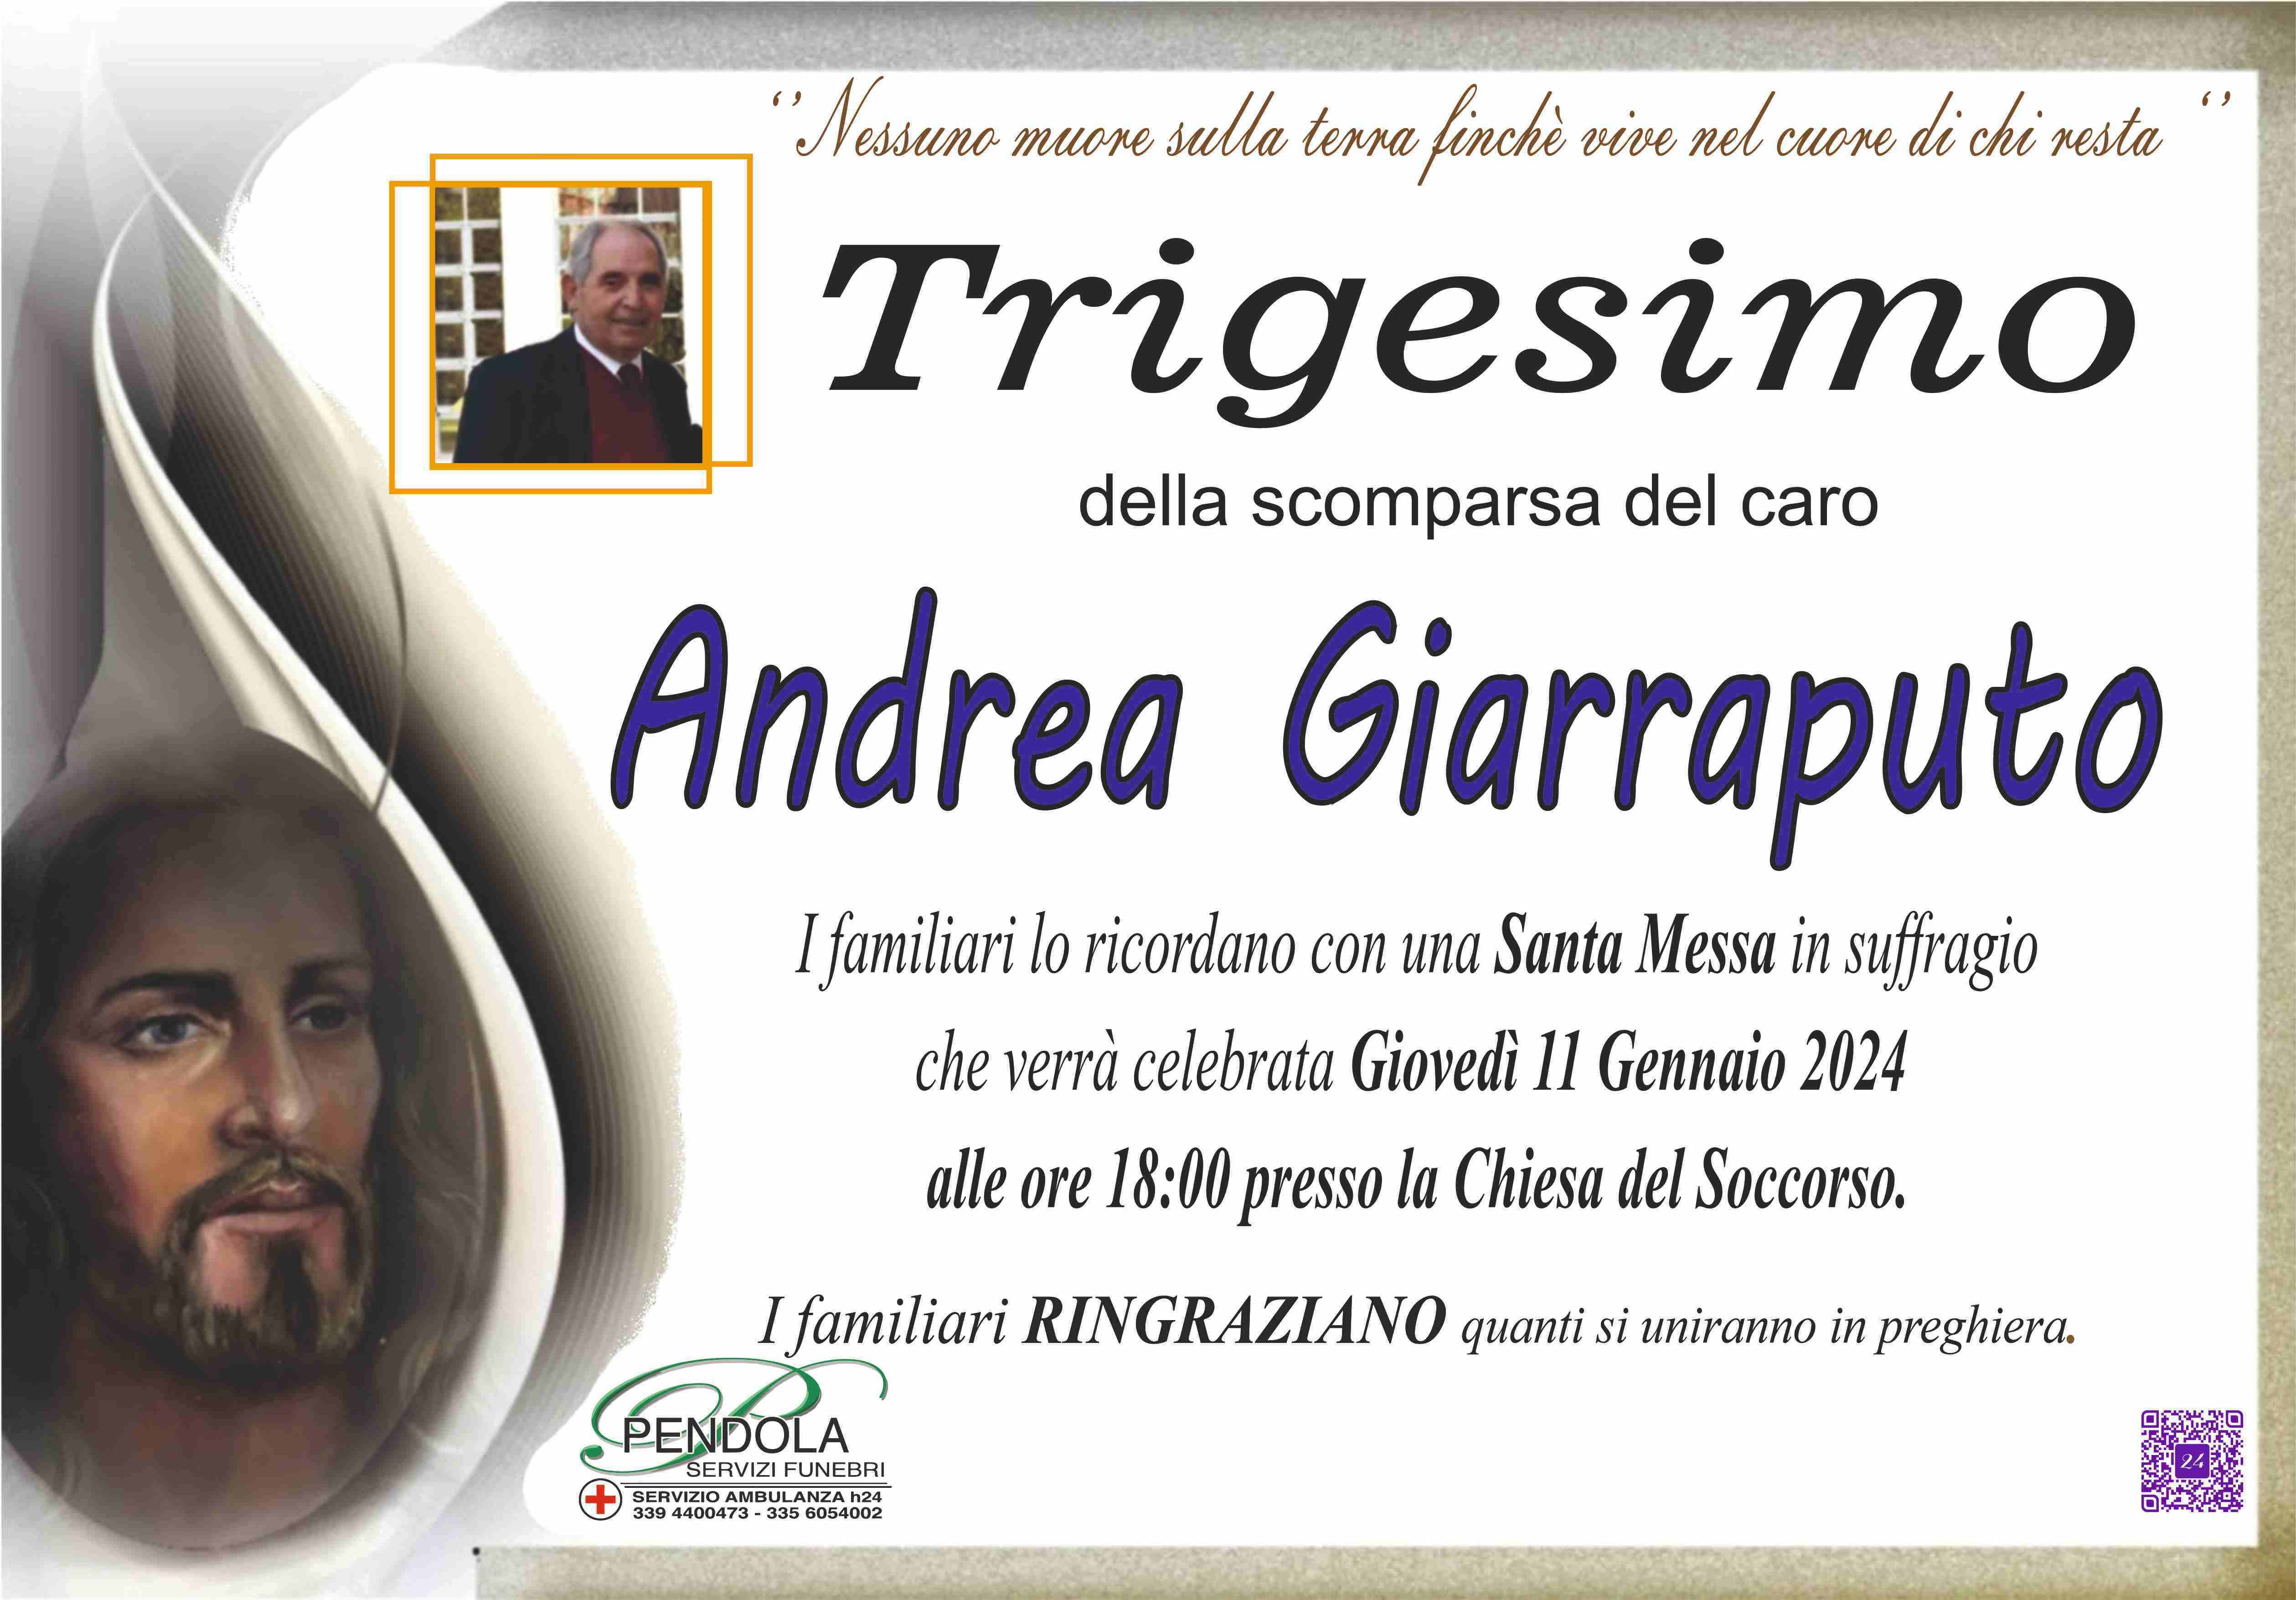 Andrea Giarraputo